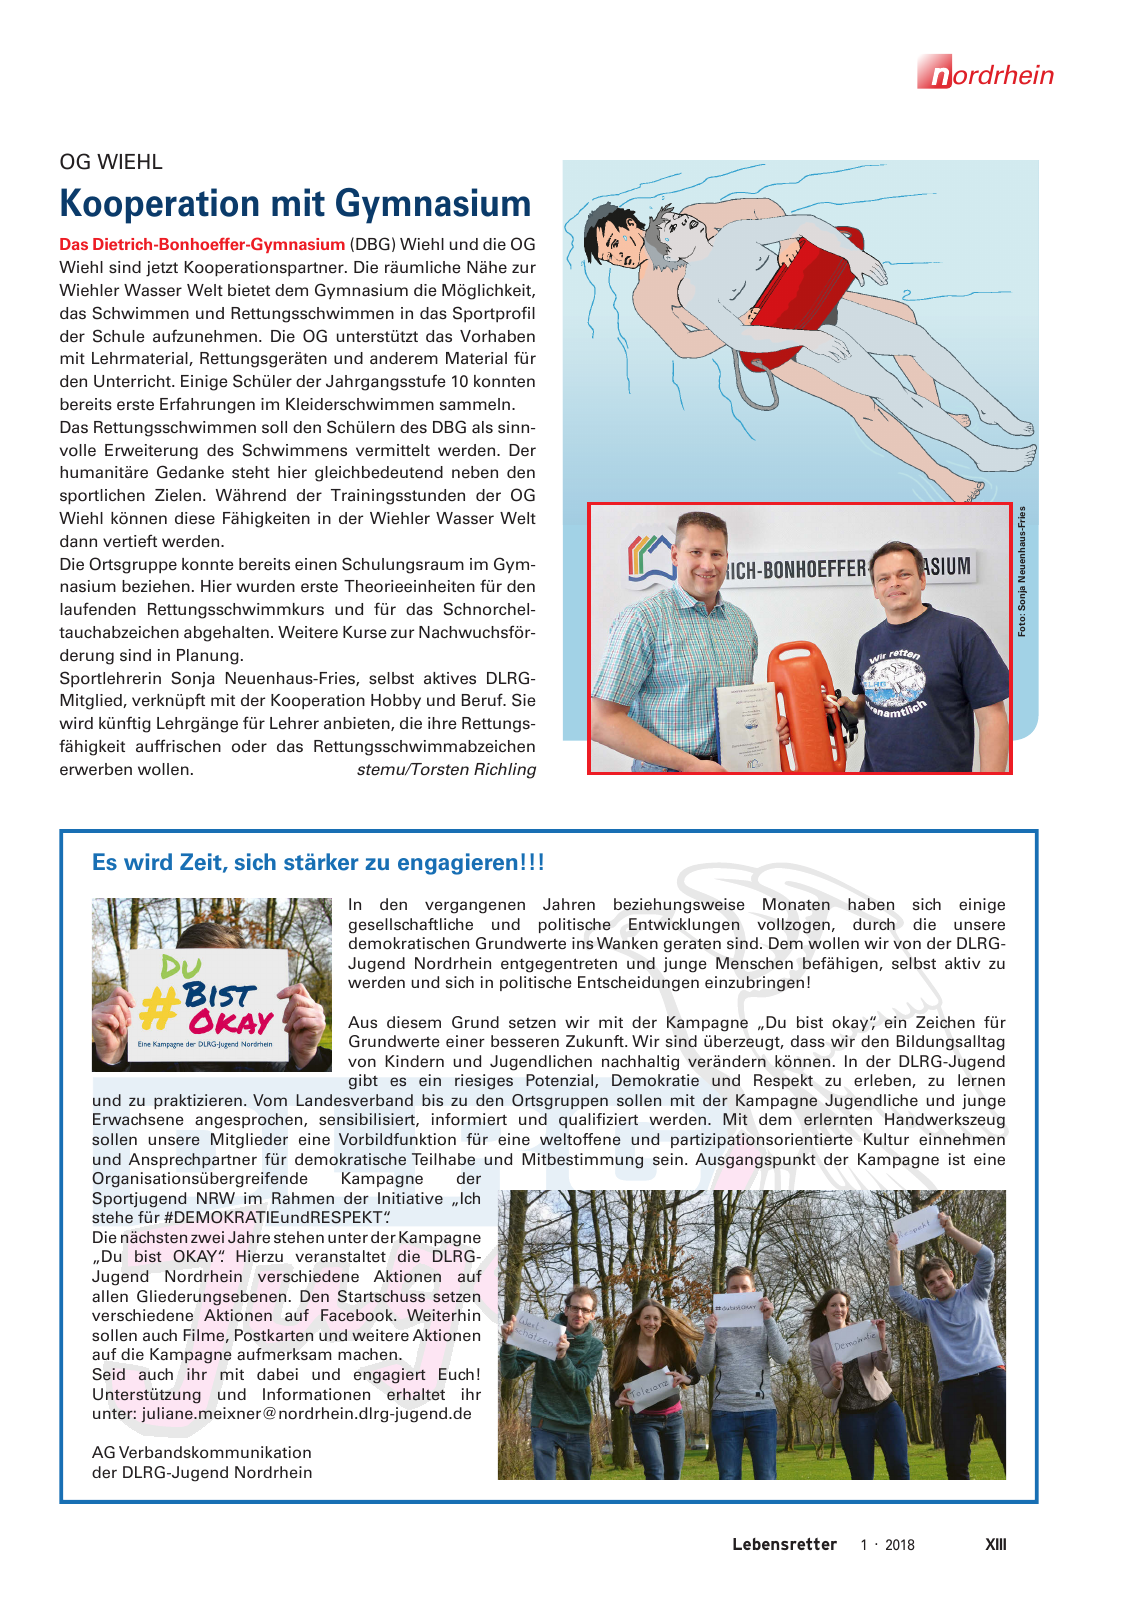 Vorschau Lebensretter 1/2018 - Regionalausgabe Nordrhein Seite 15